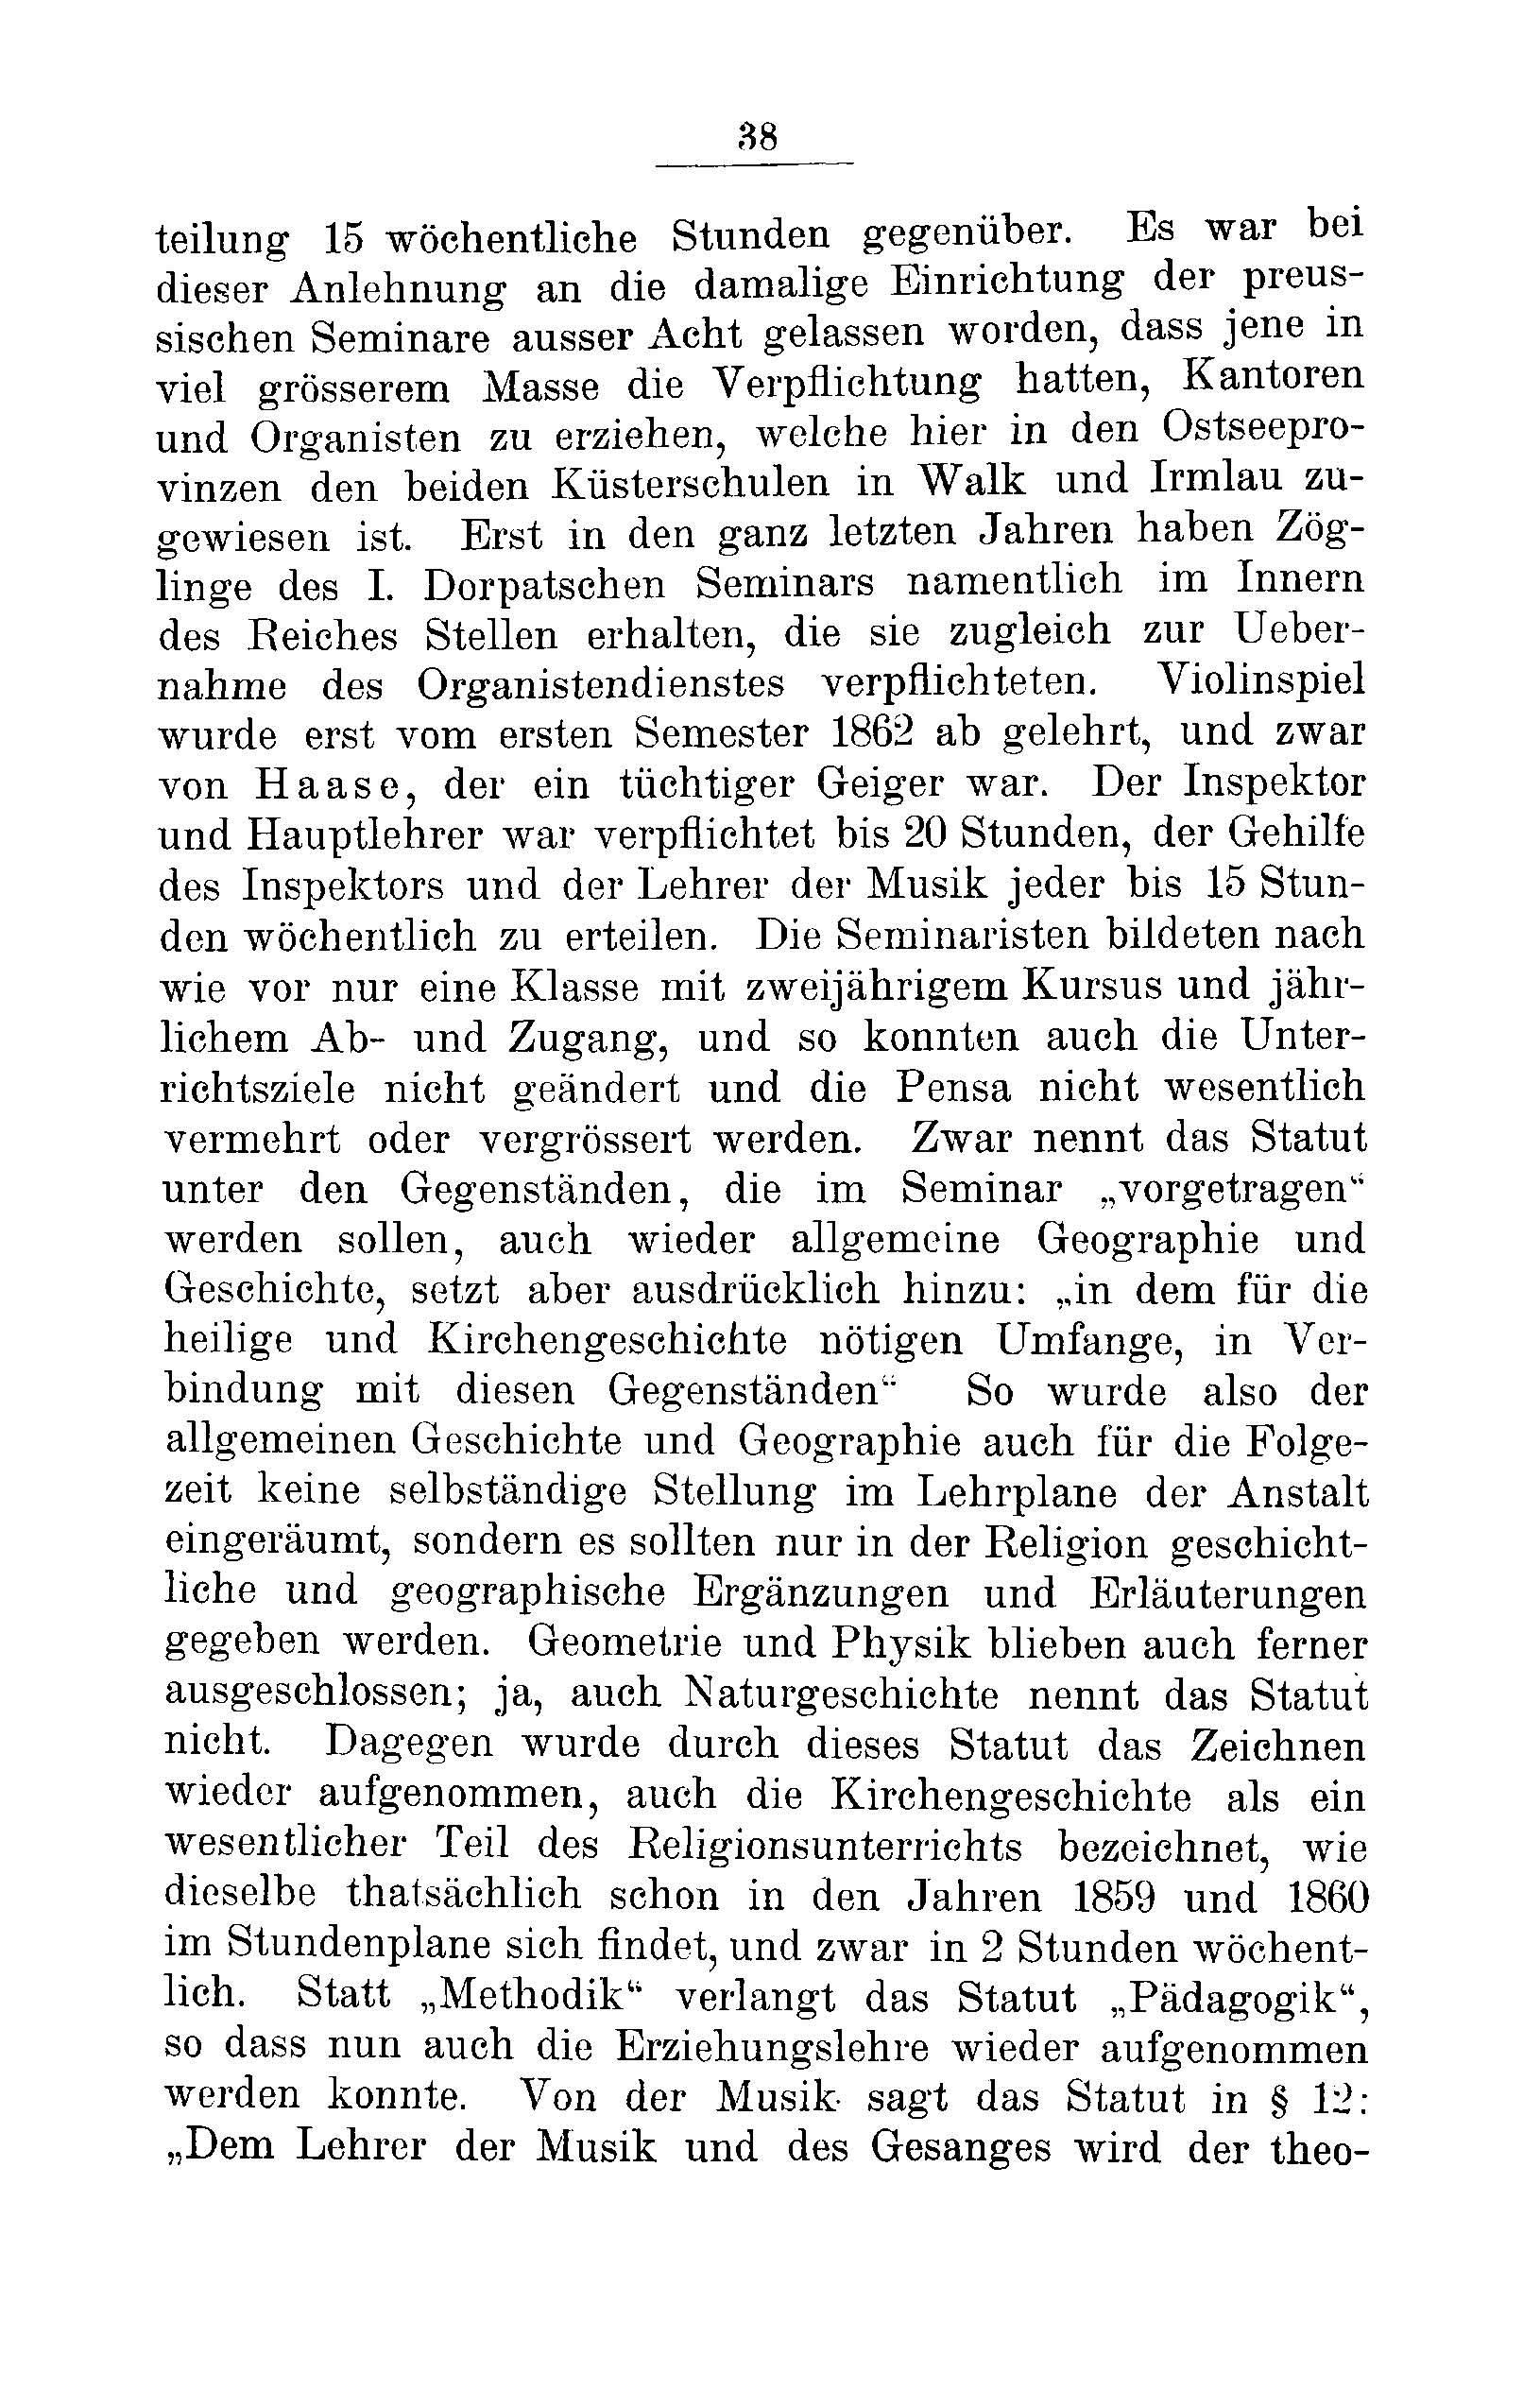 Das Erste Dorpatsche Lehrer-Seminar (1890) | 40. Haupttext